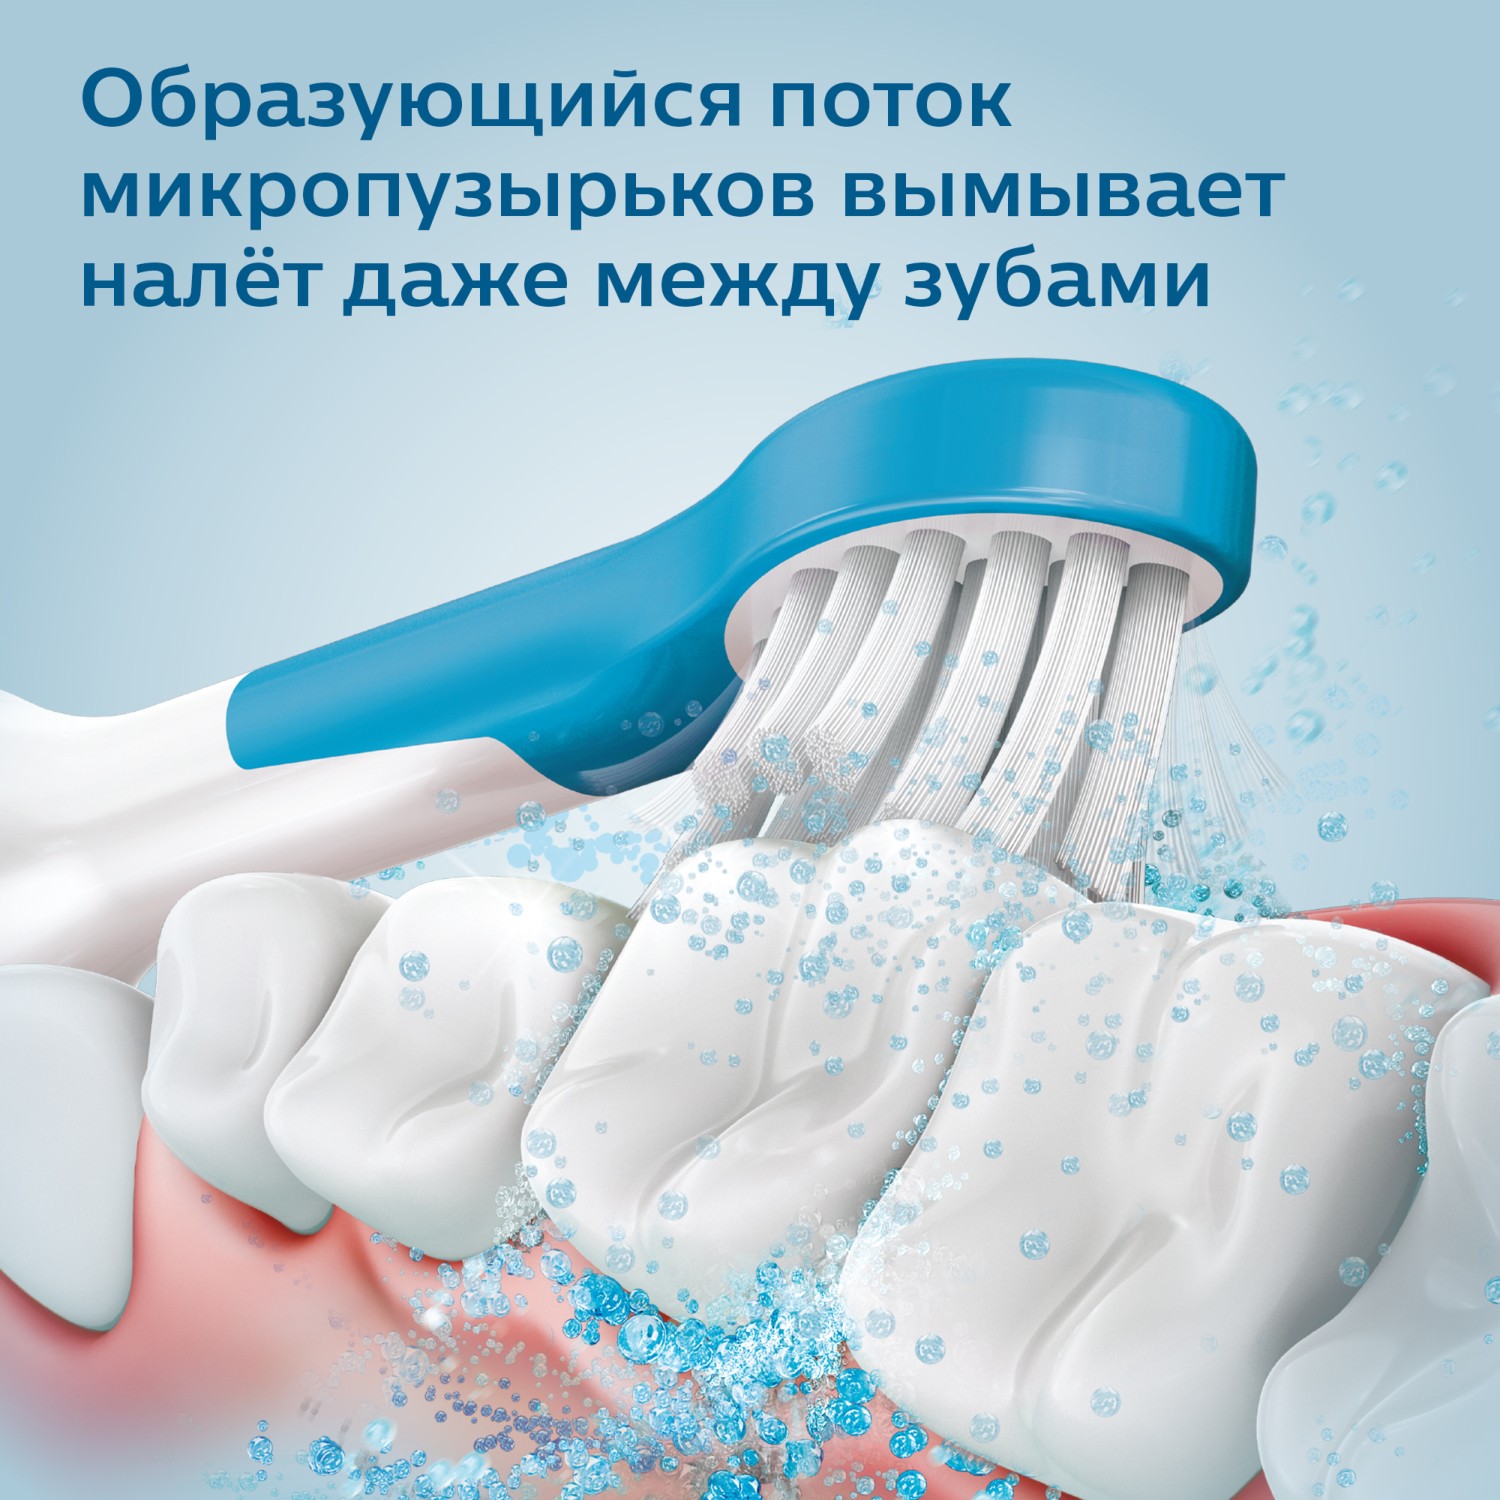 Зубная щетка Philips Sonicare For Kids электрическая с поддержкой Bluetooth HX6322/04 - фото 5